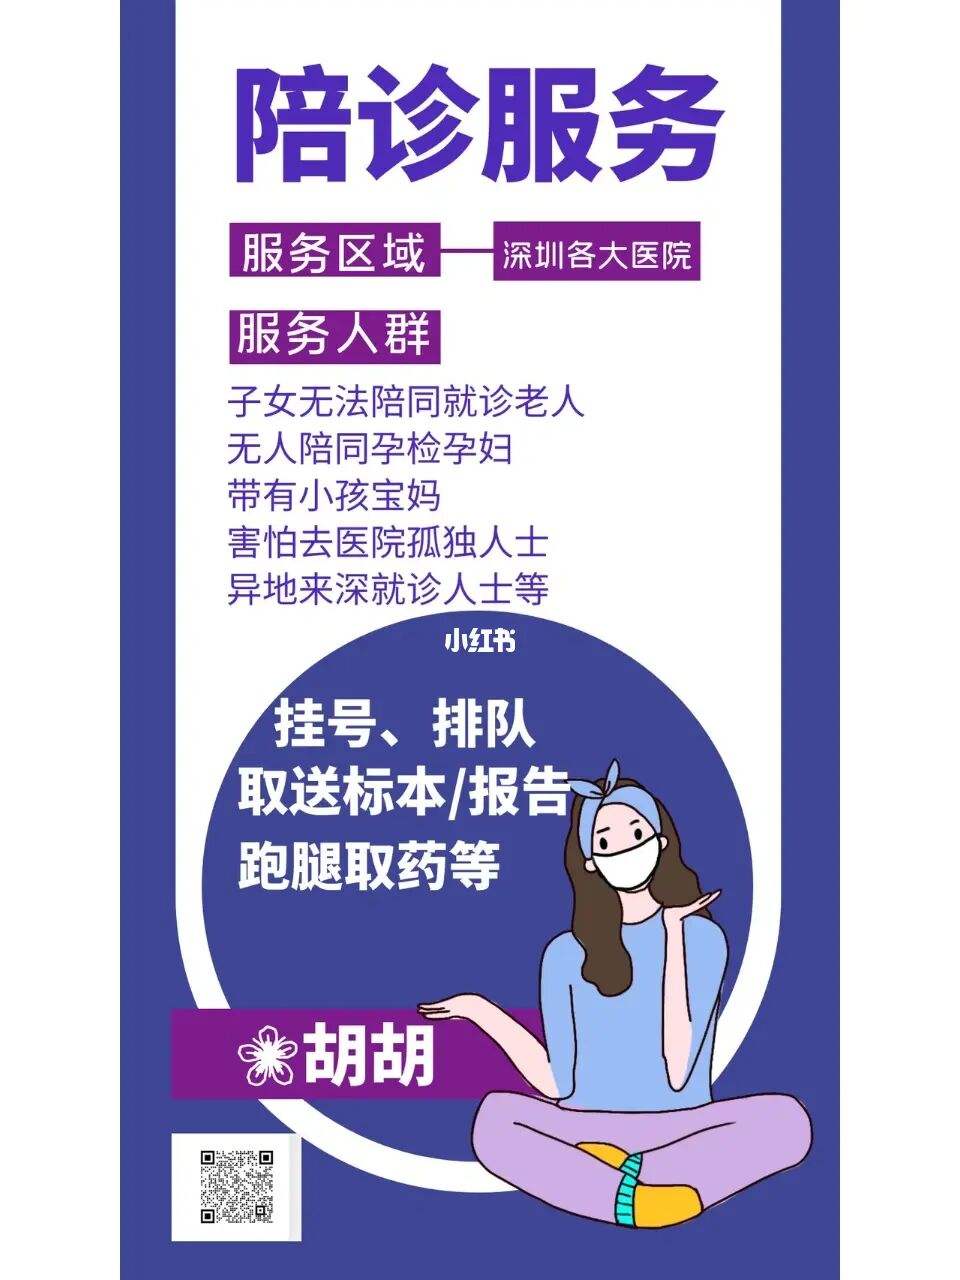 包含深圳市第三人民医院医院跑腿陪诊挂号，互利共赢合作愉快的词条